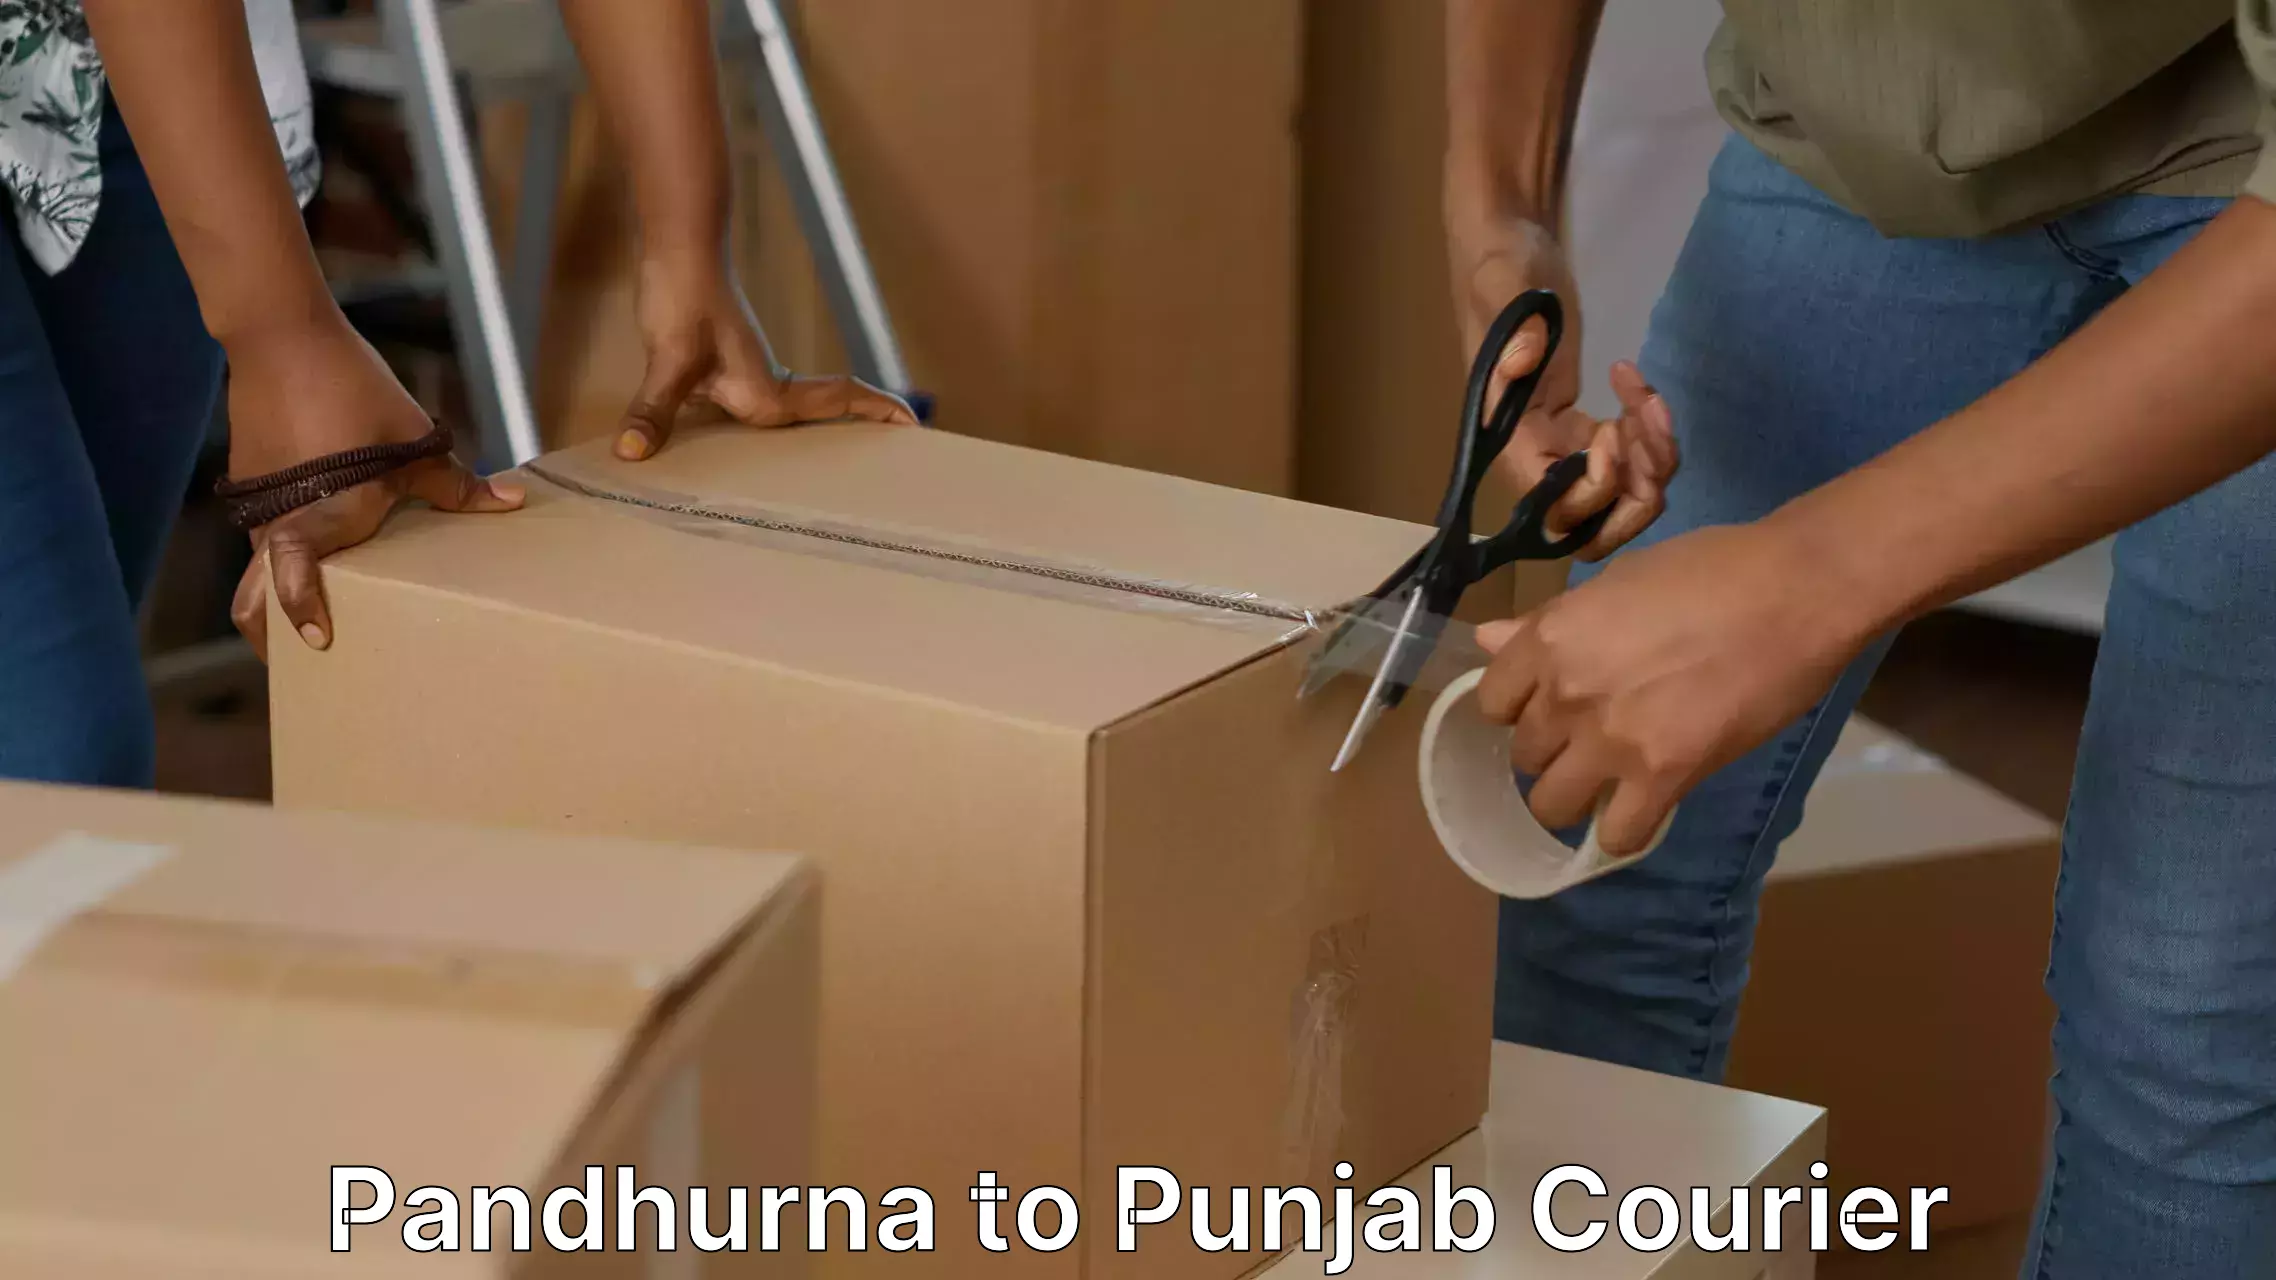 Expert moving and storage Pandhurna to Punjab